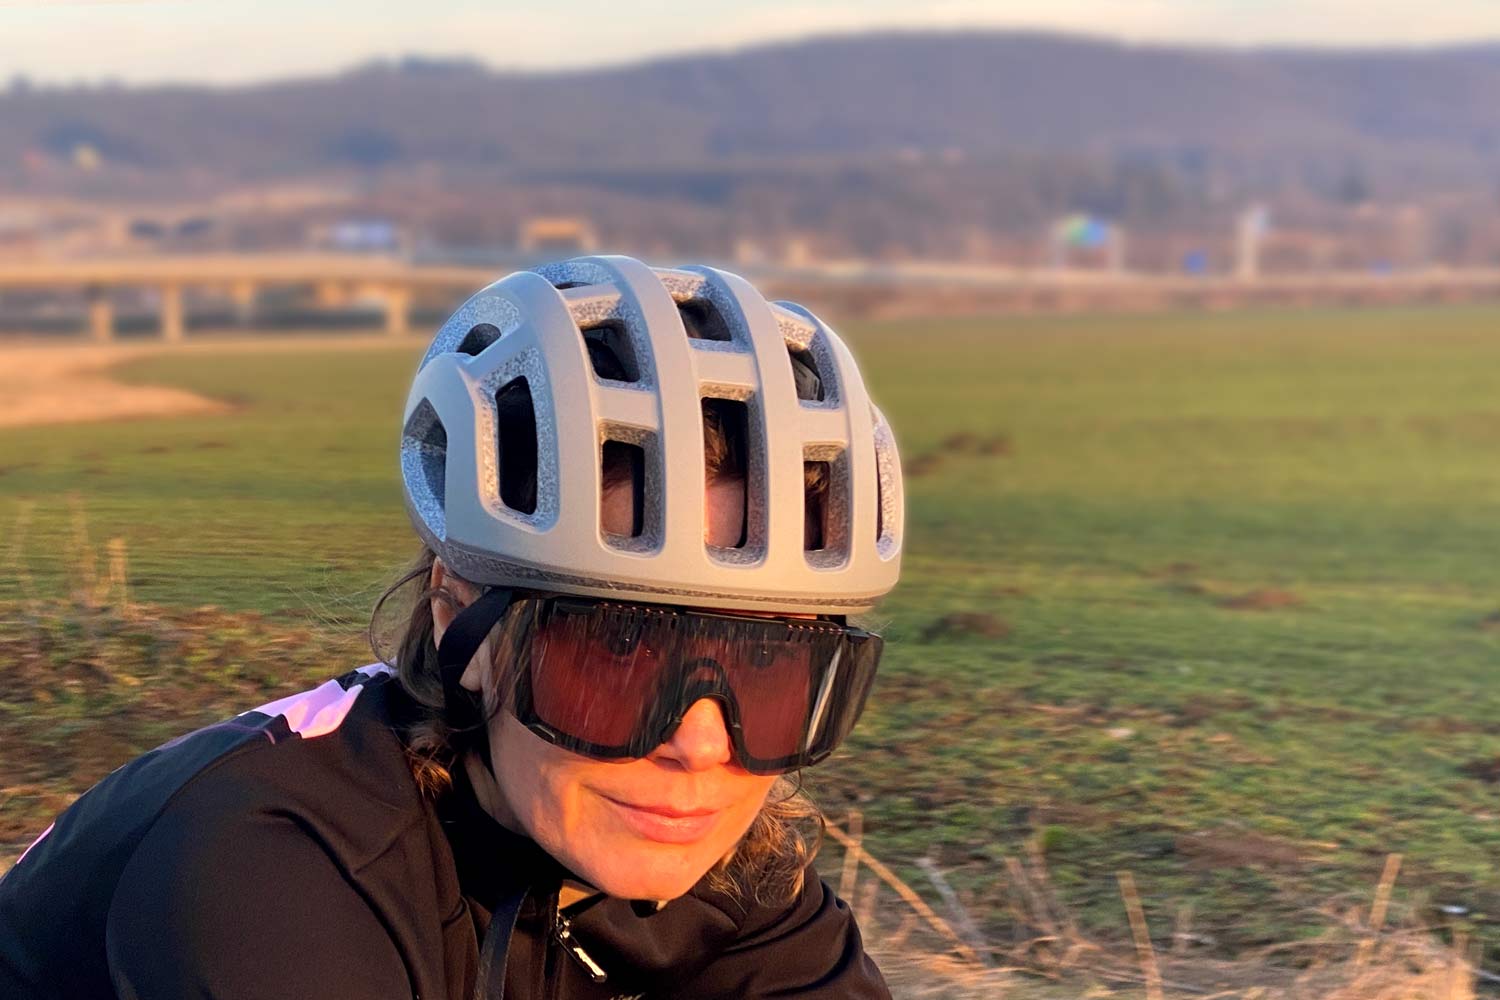 POC Ventral Lite ultralight helmet, fully vented lightweight 182g road bike helmet, front